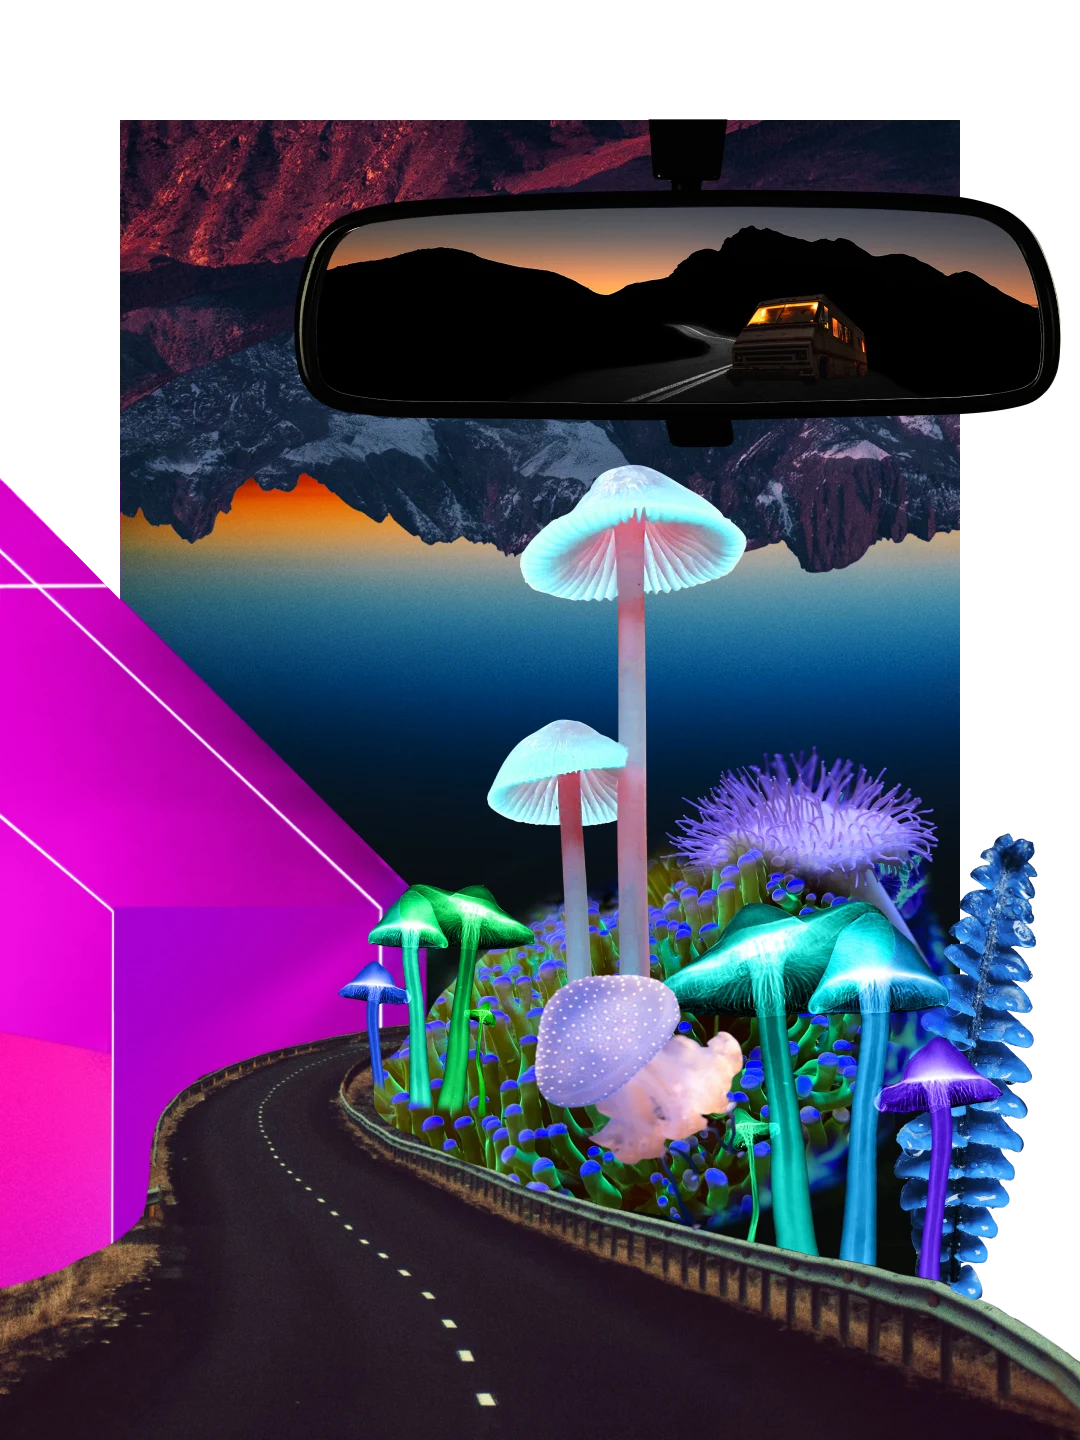 Collage coloré sur le thème des aventures nocturnes. Forme géométrique rose fluo à gauche, montagnes sombres et grands champignons façon dessin animé au premier plan. En haut, rétroviseur montrant le reflet d’un minivan, d’une route et de montagnes au crépuscule.
